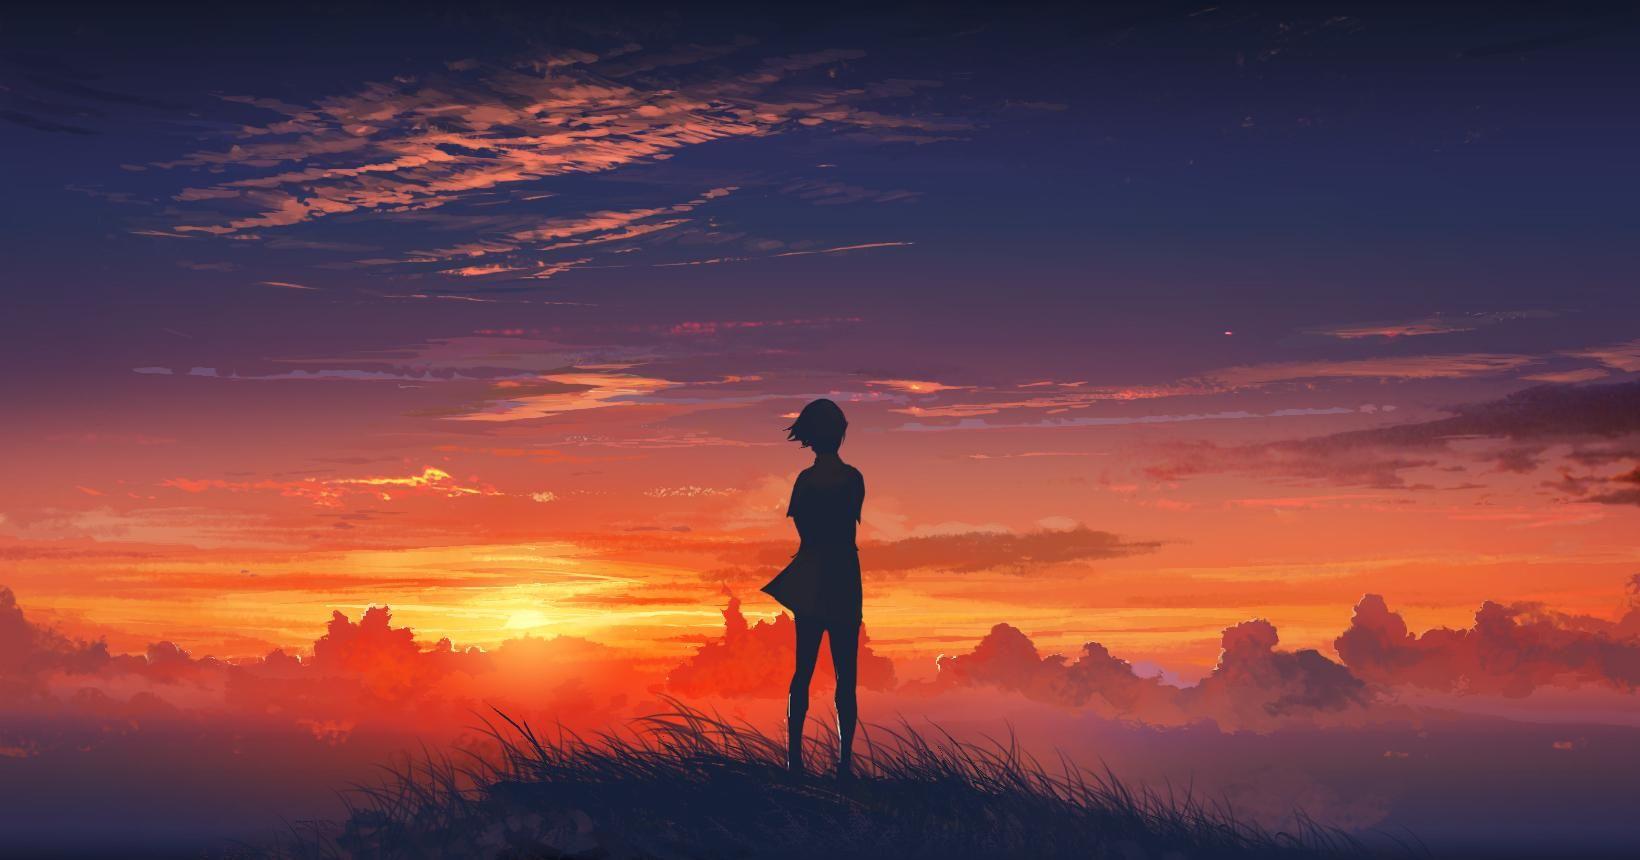 Sunset Anime. 風景デザイン, アニメの風景, 夕焼け